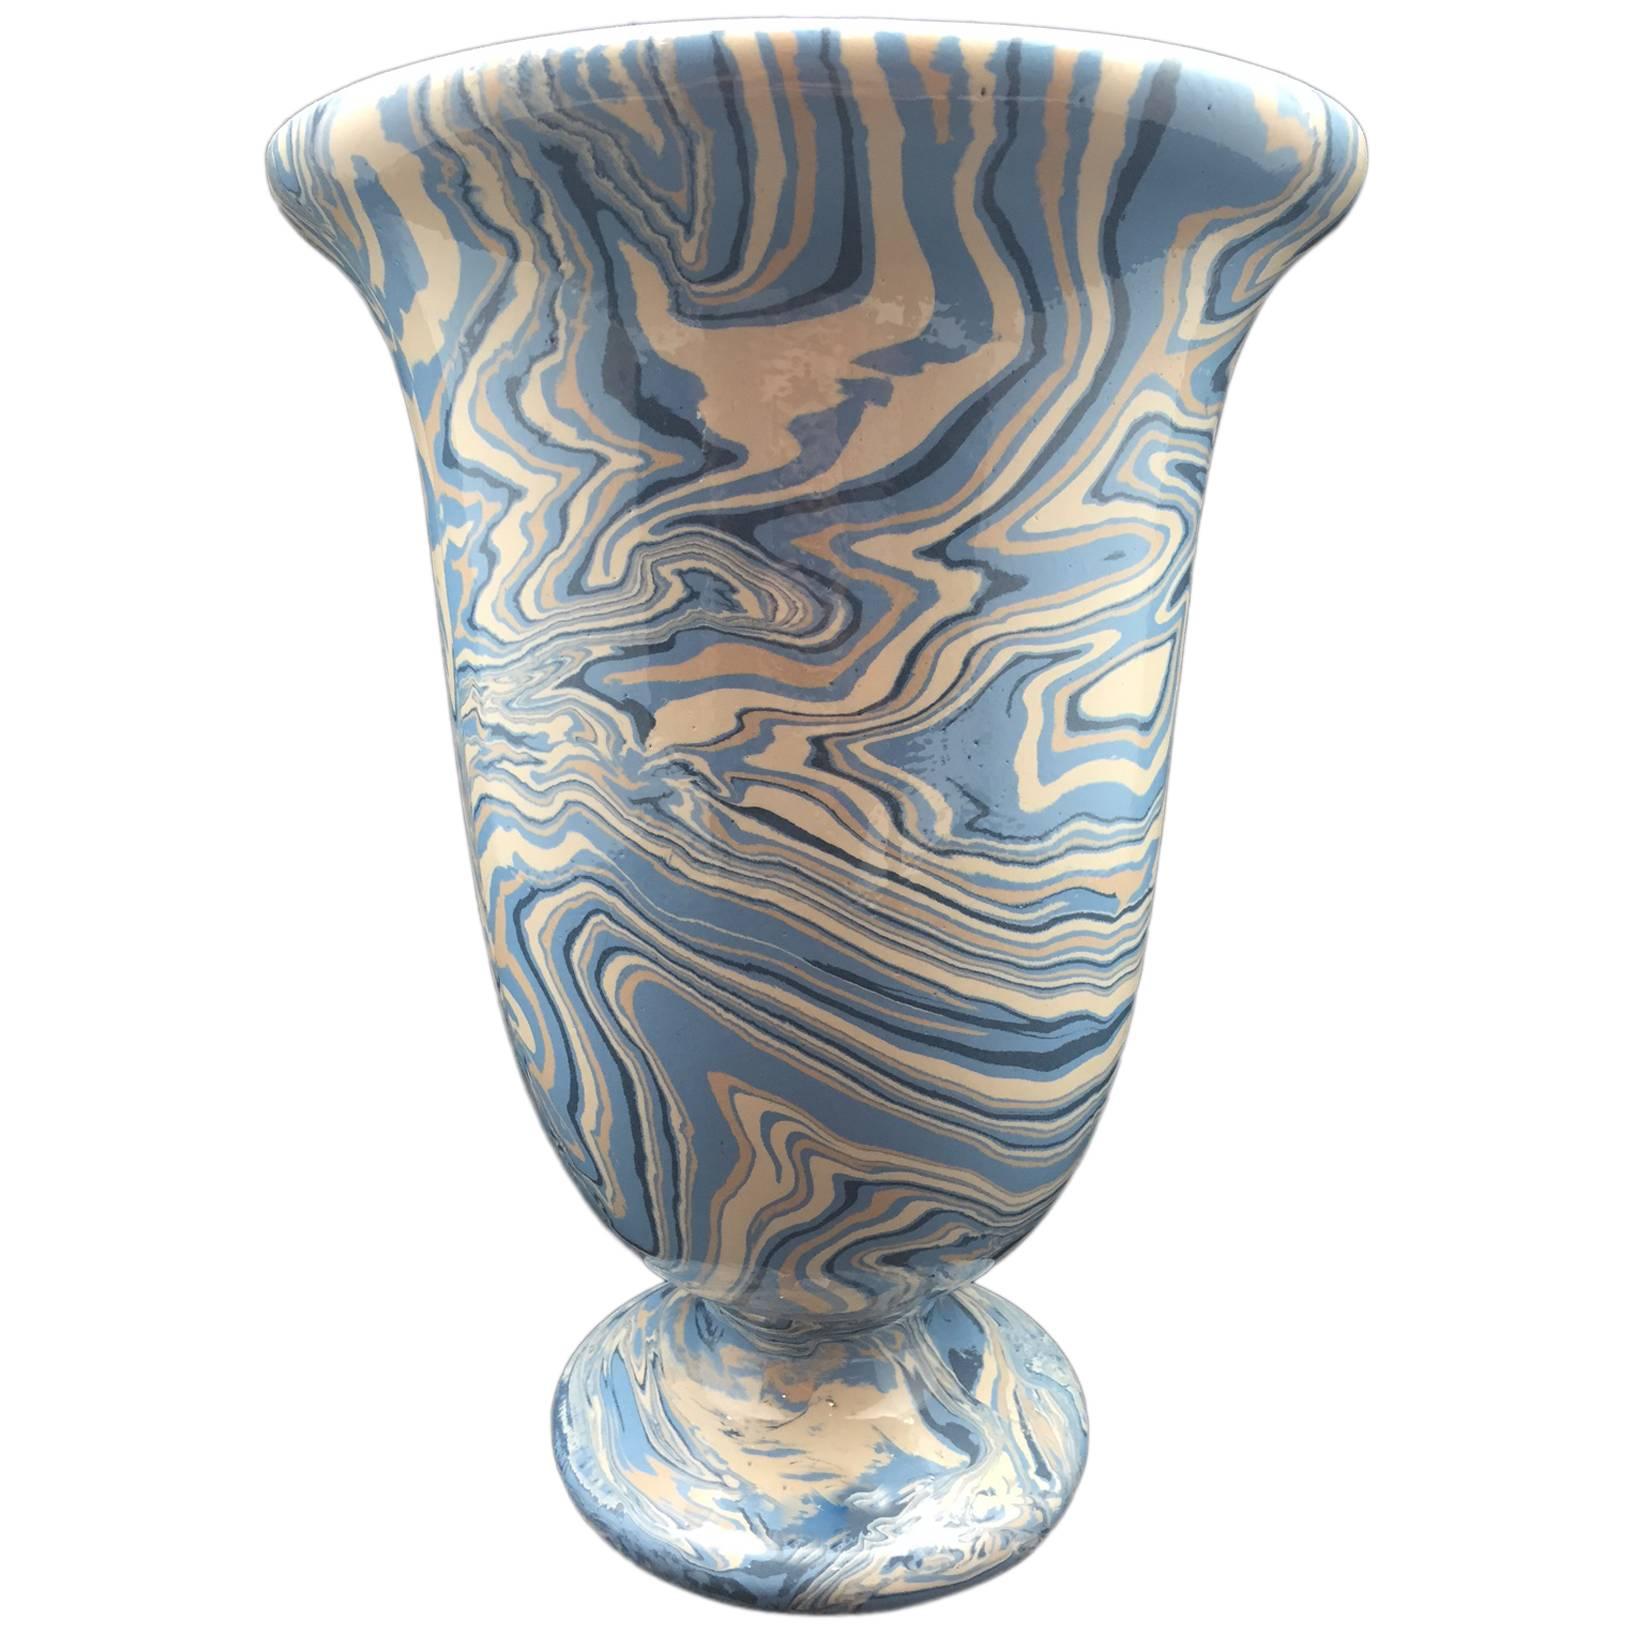 Marbleized Blue Apt Style Faience Medicis Vase by Sylvie Saint-André Perrin